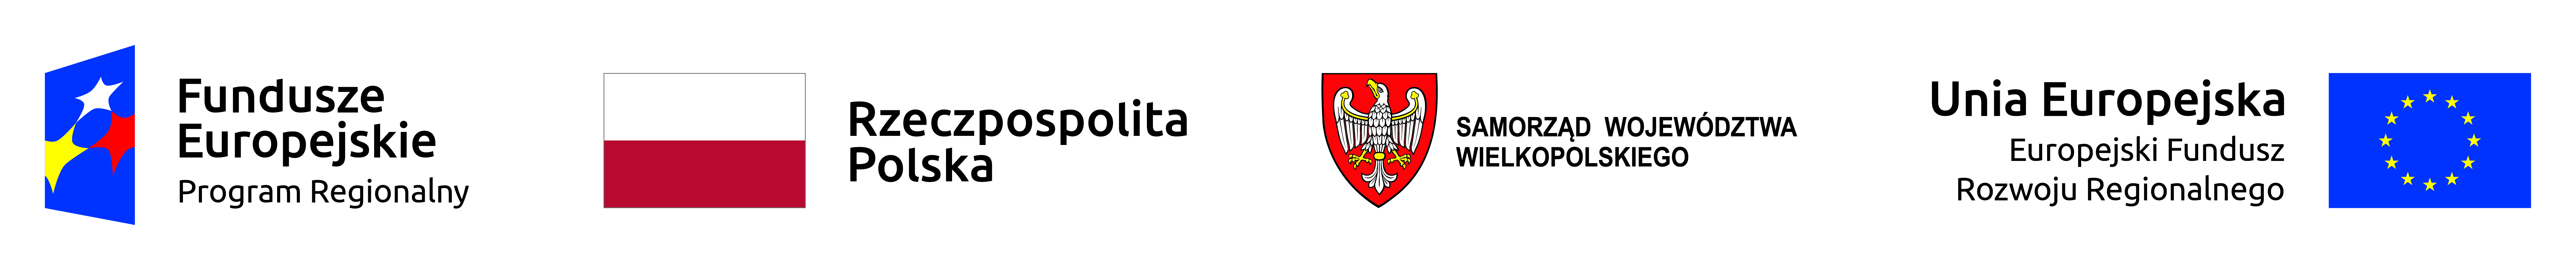 Logotypy: Fundusze Europejskie, Rzeczpospolita Polska, Samorząd Województwa Wielkopolskiego, Unia Europejska